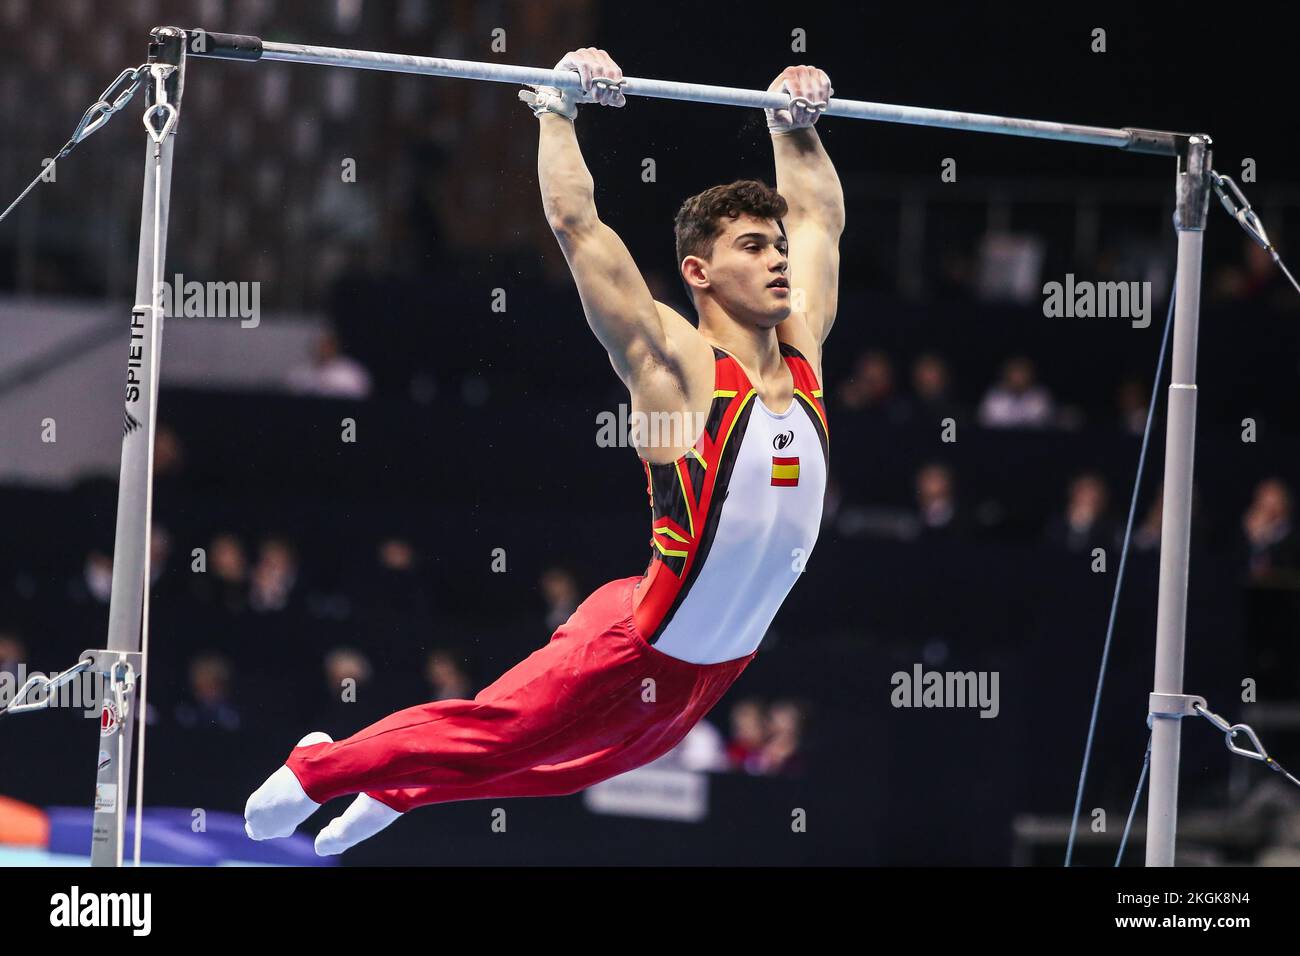 Szczecin, Pologne, 10 avril 2019: L'athlète masculin Mir Nicolau d'Espagne est en compétition sur la barre horizontale Banque D'Images